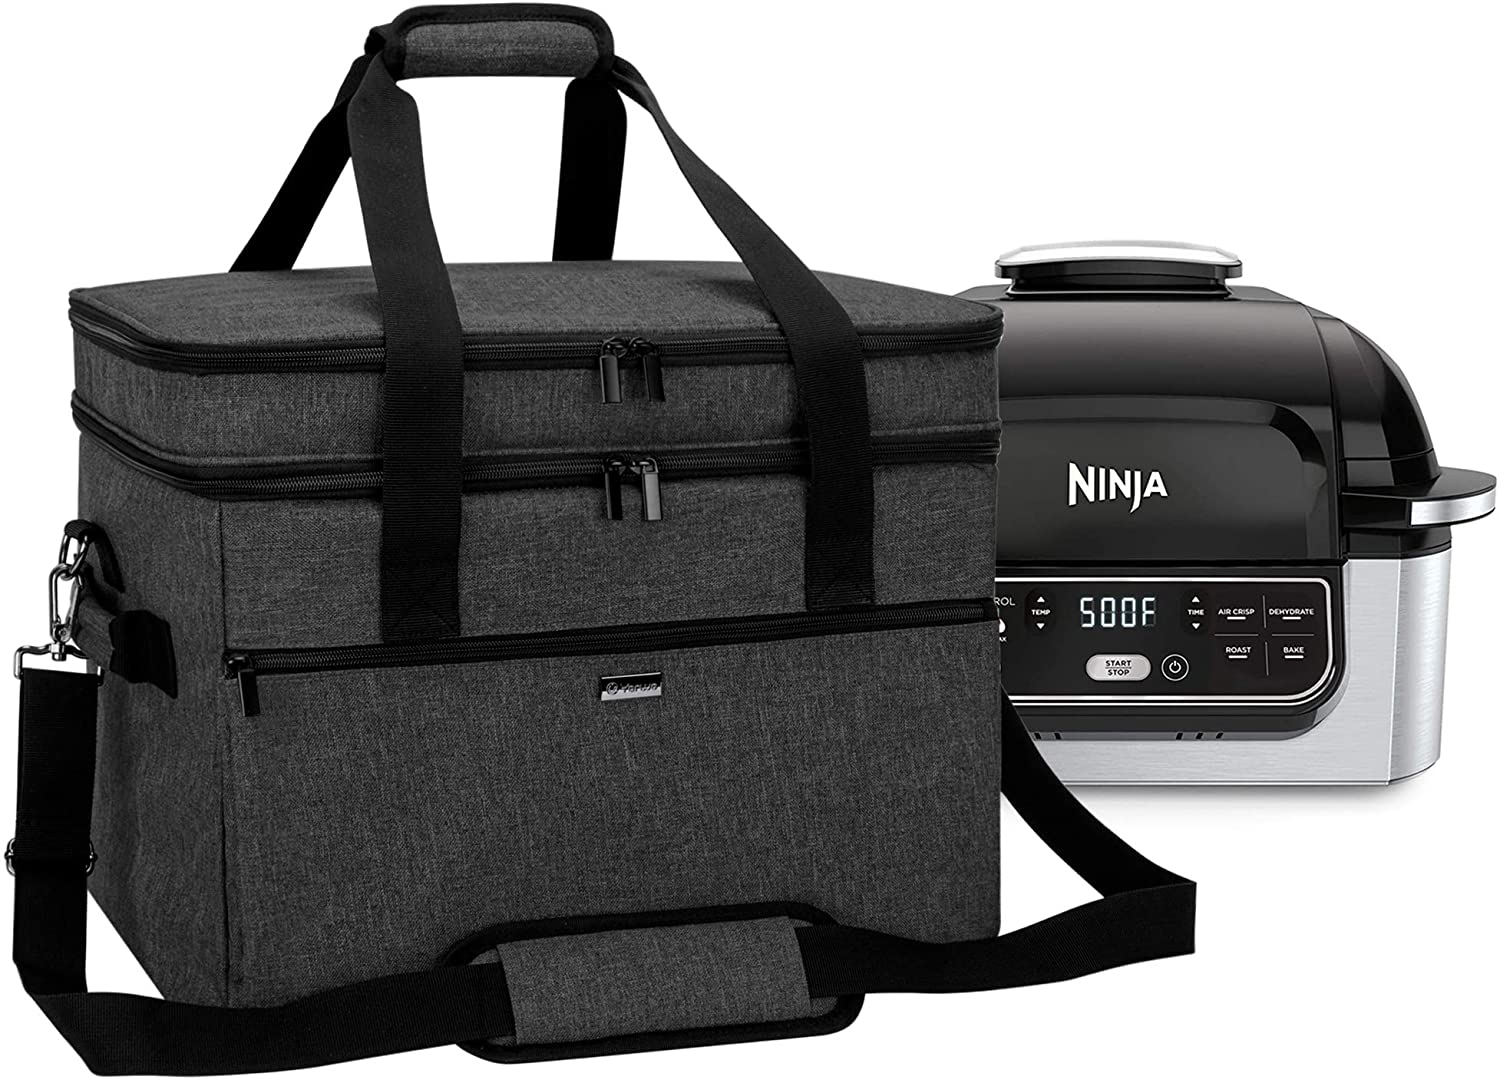 A travel bag for the Ninja Foodi grill